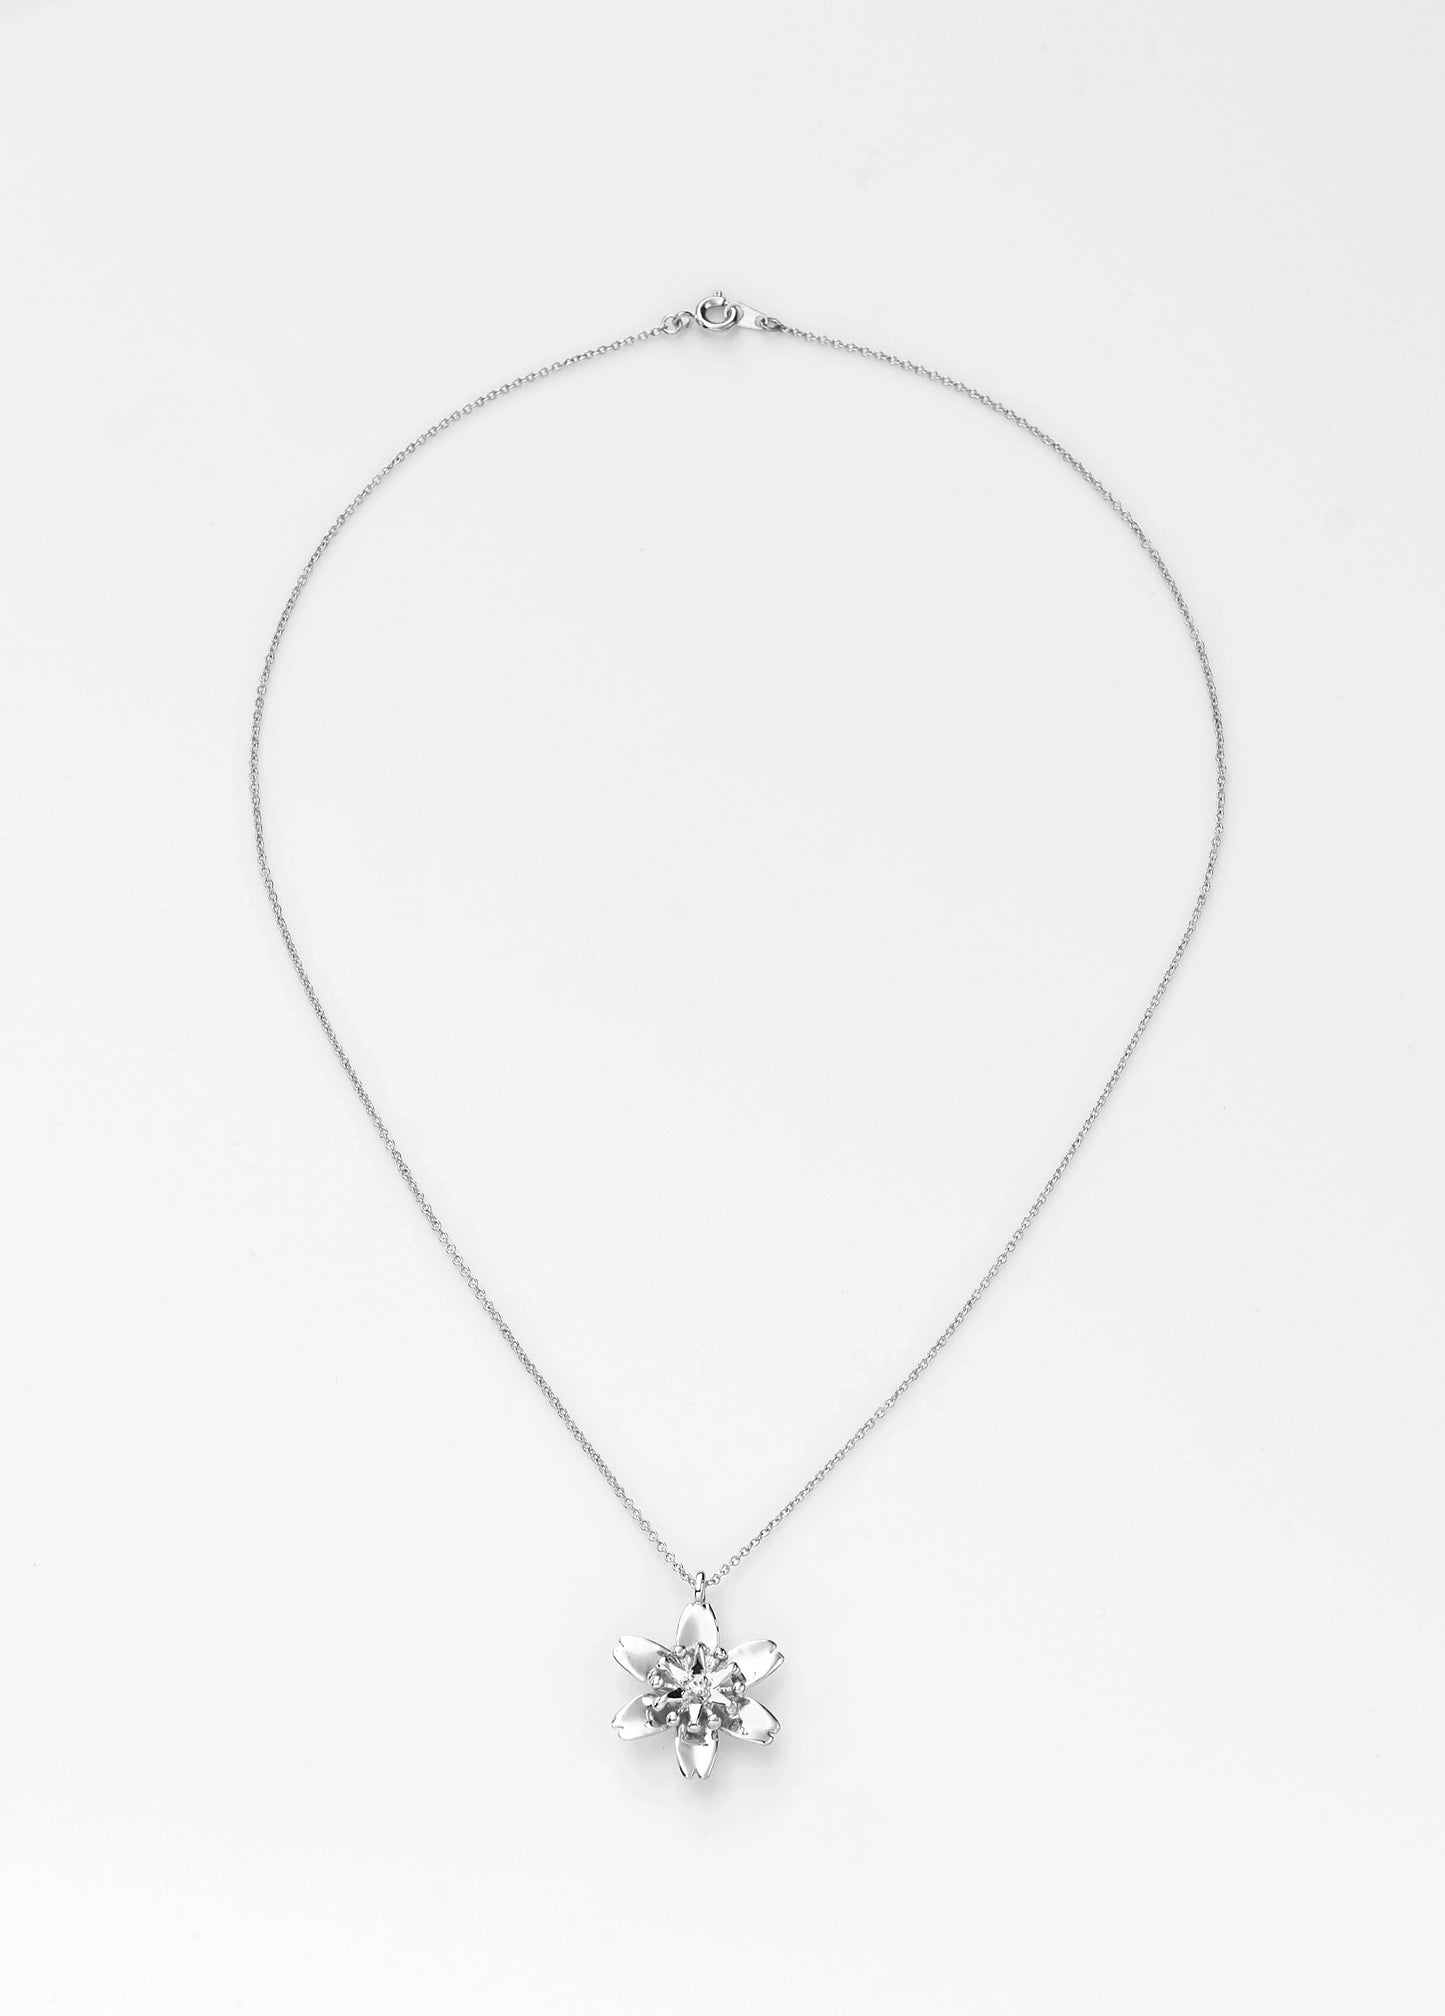 【綻放】一支獨秀-櫻花項鍊 /925純銀/ 黃銅鍍20k金 Sakura Pendant Necklace